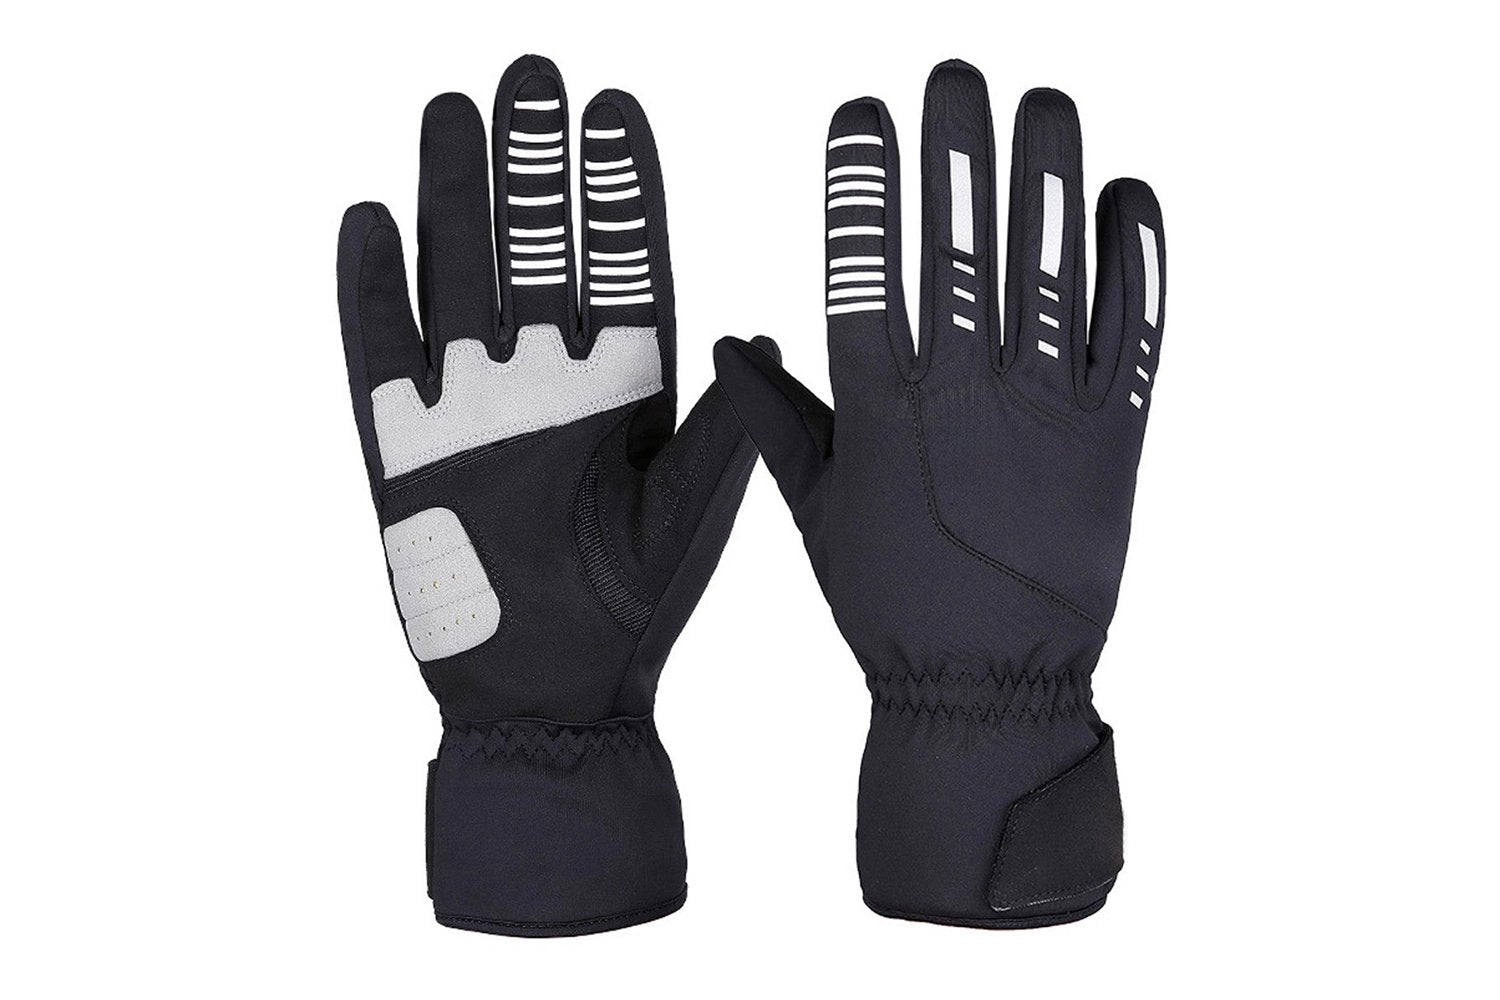 KastKing IceRiver Fishing Gloves – 100% Waterproof Turkey